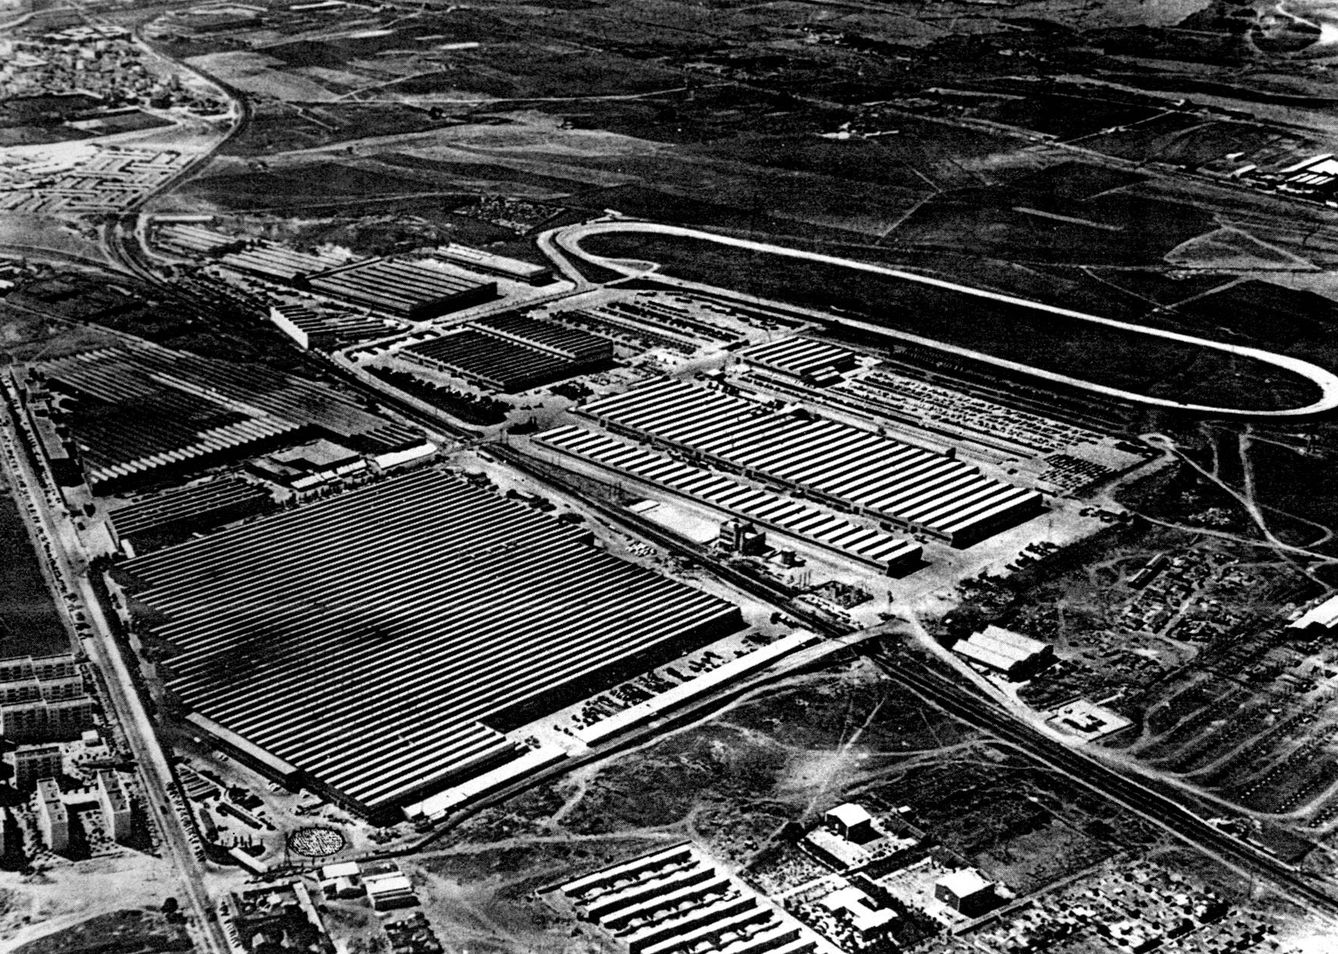 Vista aérea de la factoría de Barreiros Diésel en Villaverde, Madrid. (Fundación Eduardo Barreiros)